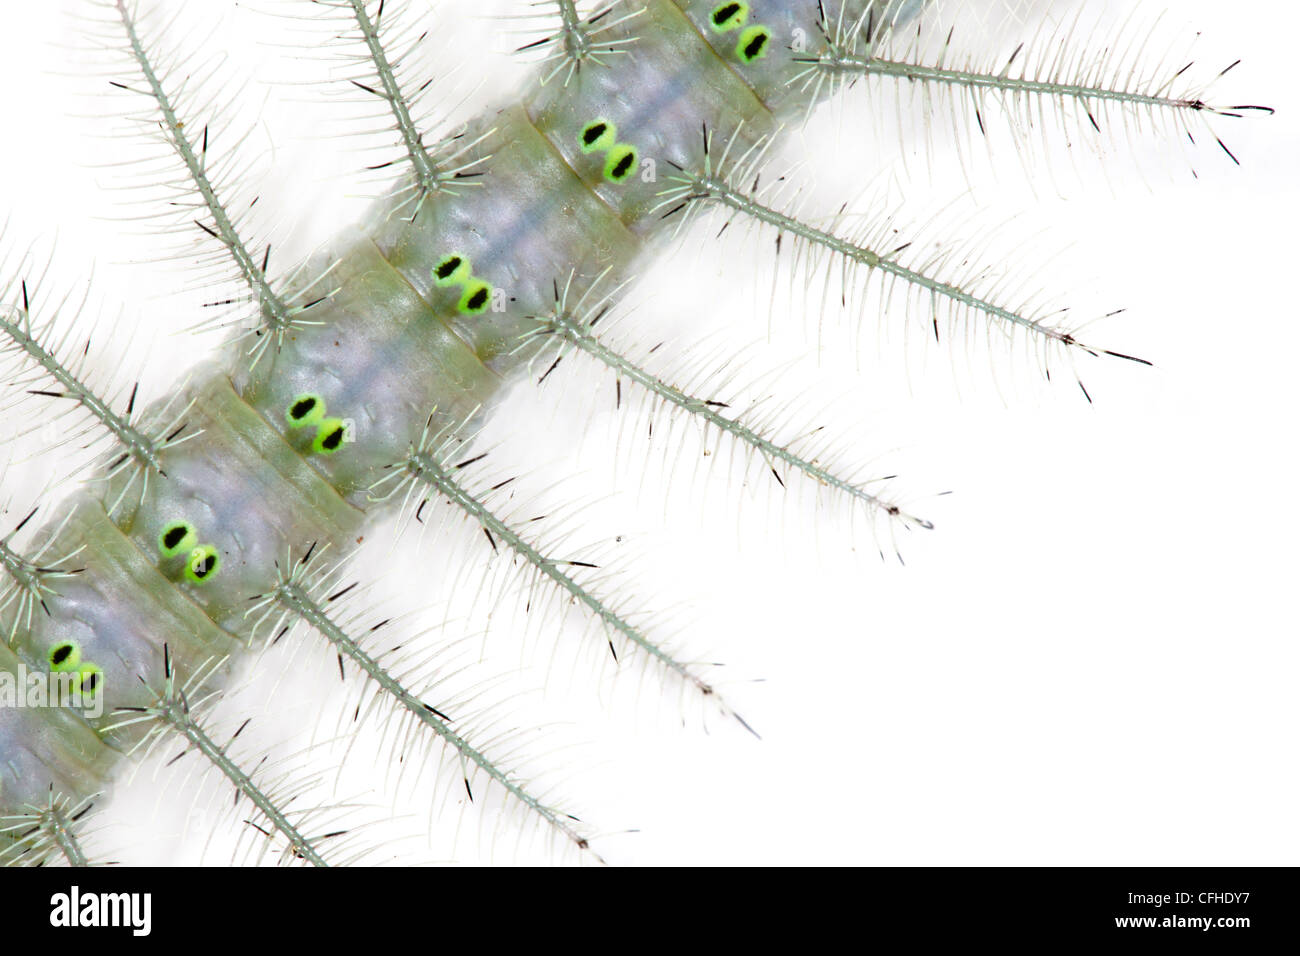 Close up caterpillar gris couverts en épines défensives, photographié sur un fond blanc. Maroantsetra, Madagascar Banque D'Images